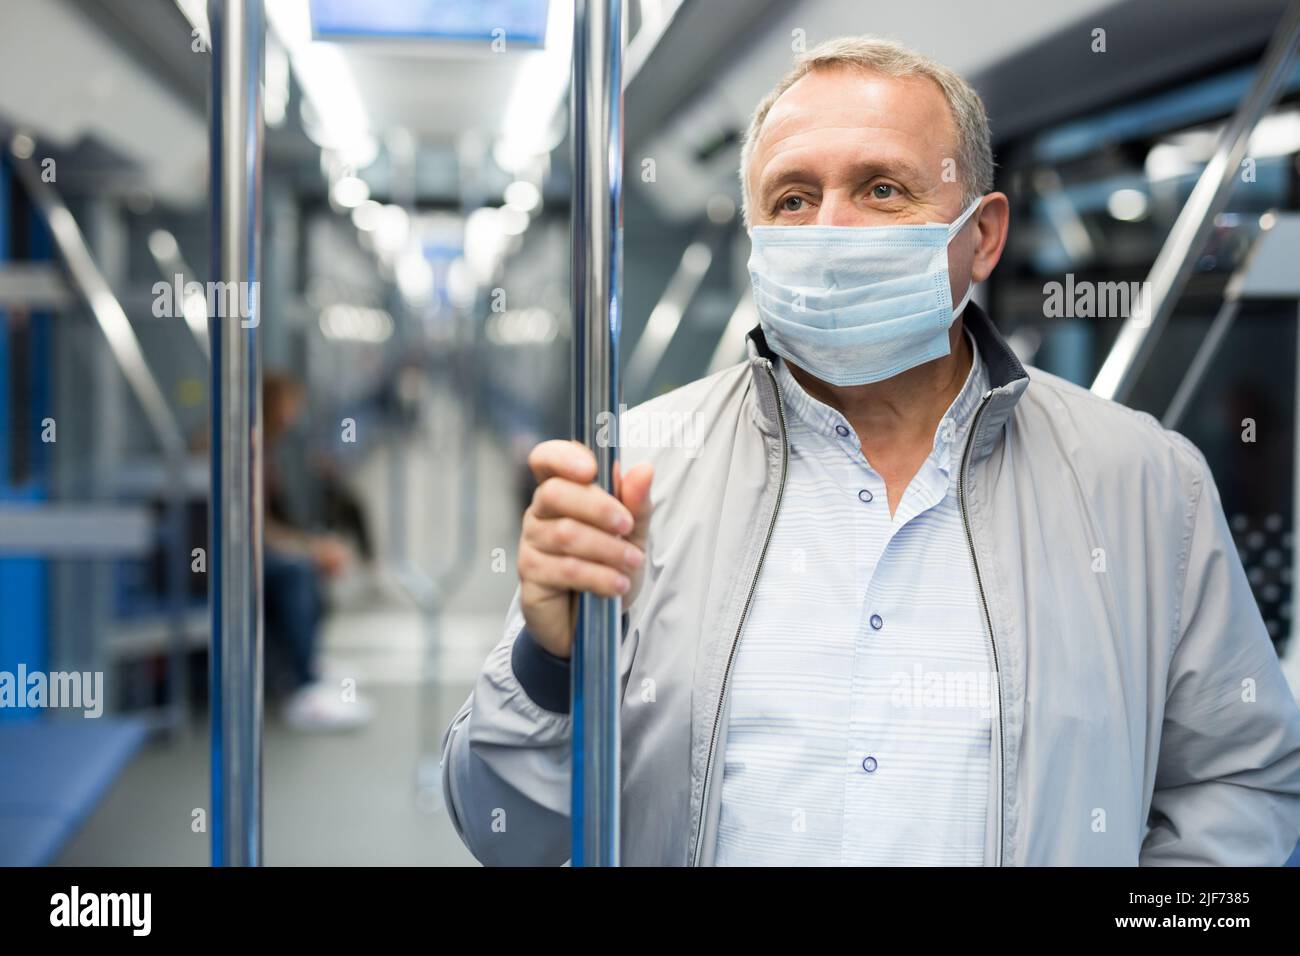 Mann mittleren Alters mit Gesichtsmaske im U-Bahn-Auto Stockfoto